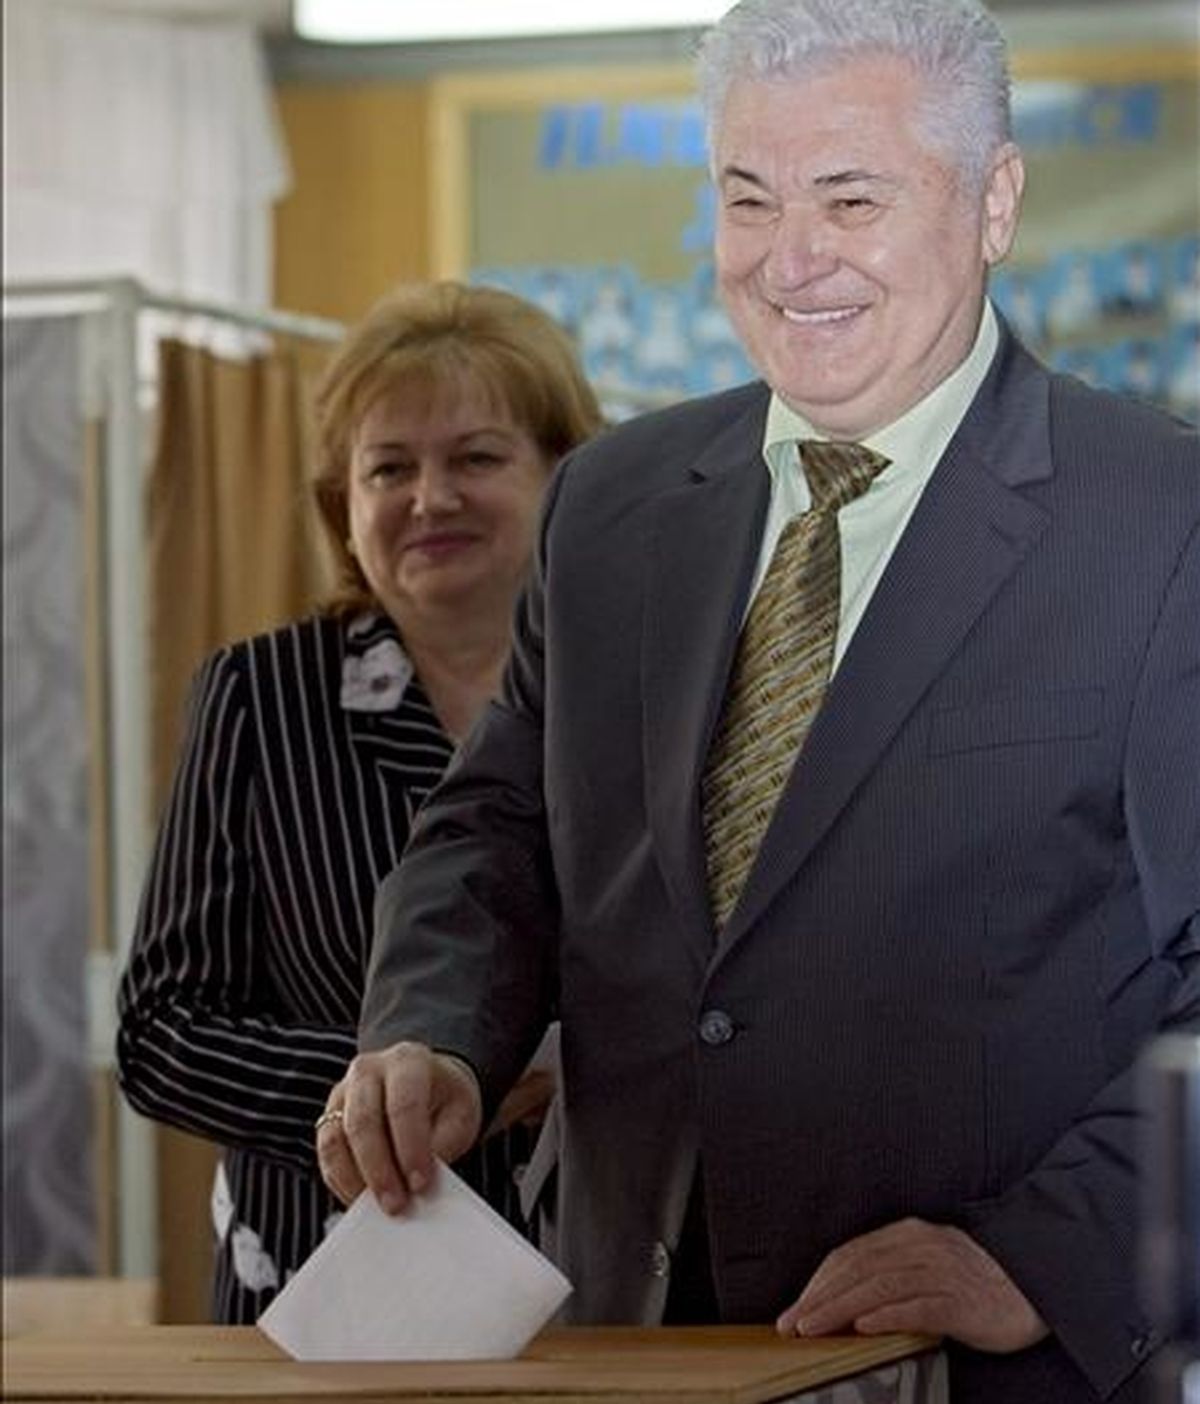 El presidente de Moldavia, Vladimir Voronin (d), y su esposa, Taisia Voronin, depositan su voto hoy en un colegio electoral para los comicios al Parlamento, en el Liceo Antioh Cantemir de Chisinau (Moldavia). EFE